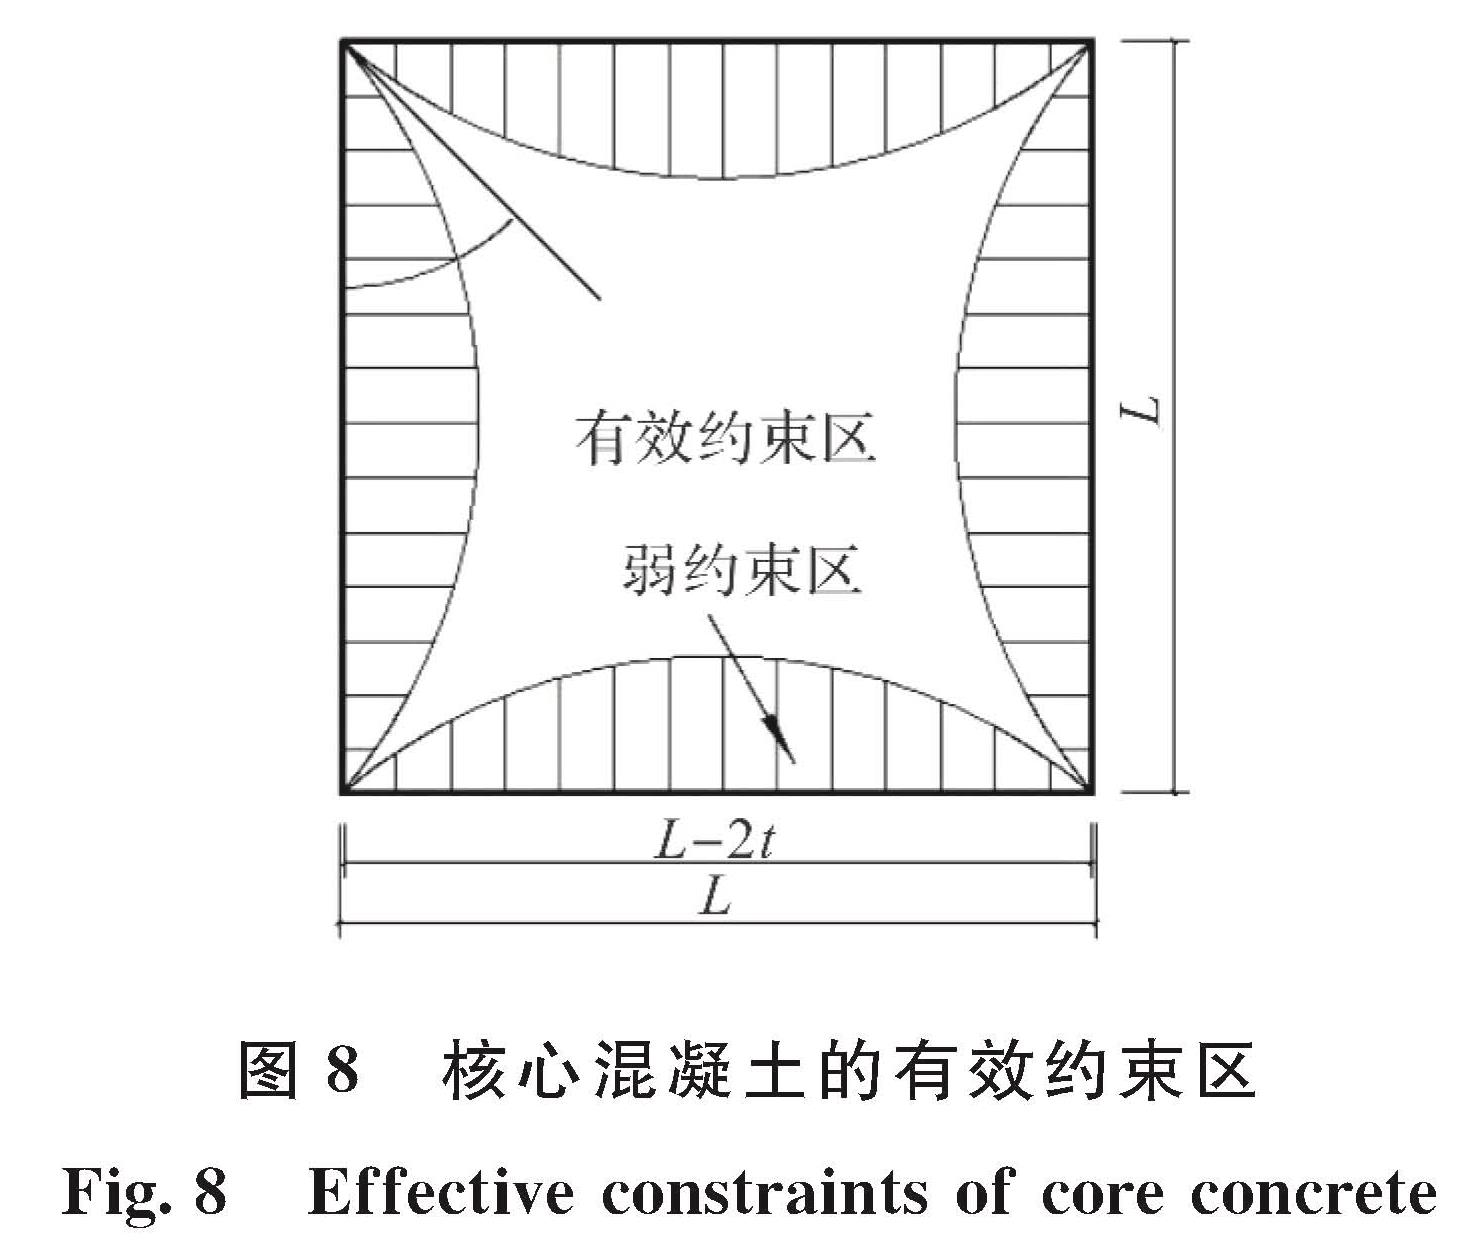 图8 核心混凝土的有效约束区<br/>Fig.8 Effective constraints of core concrete